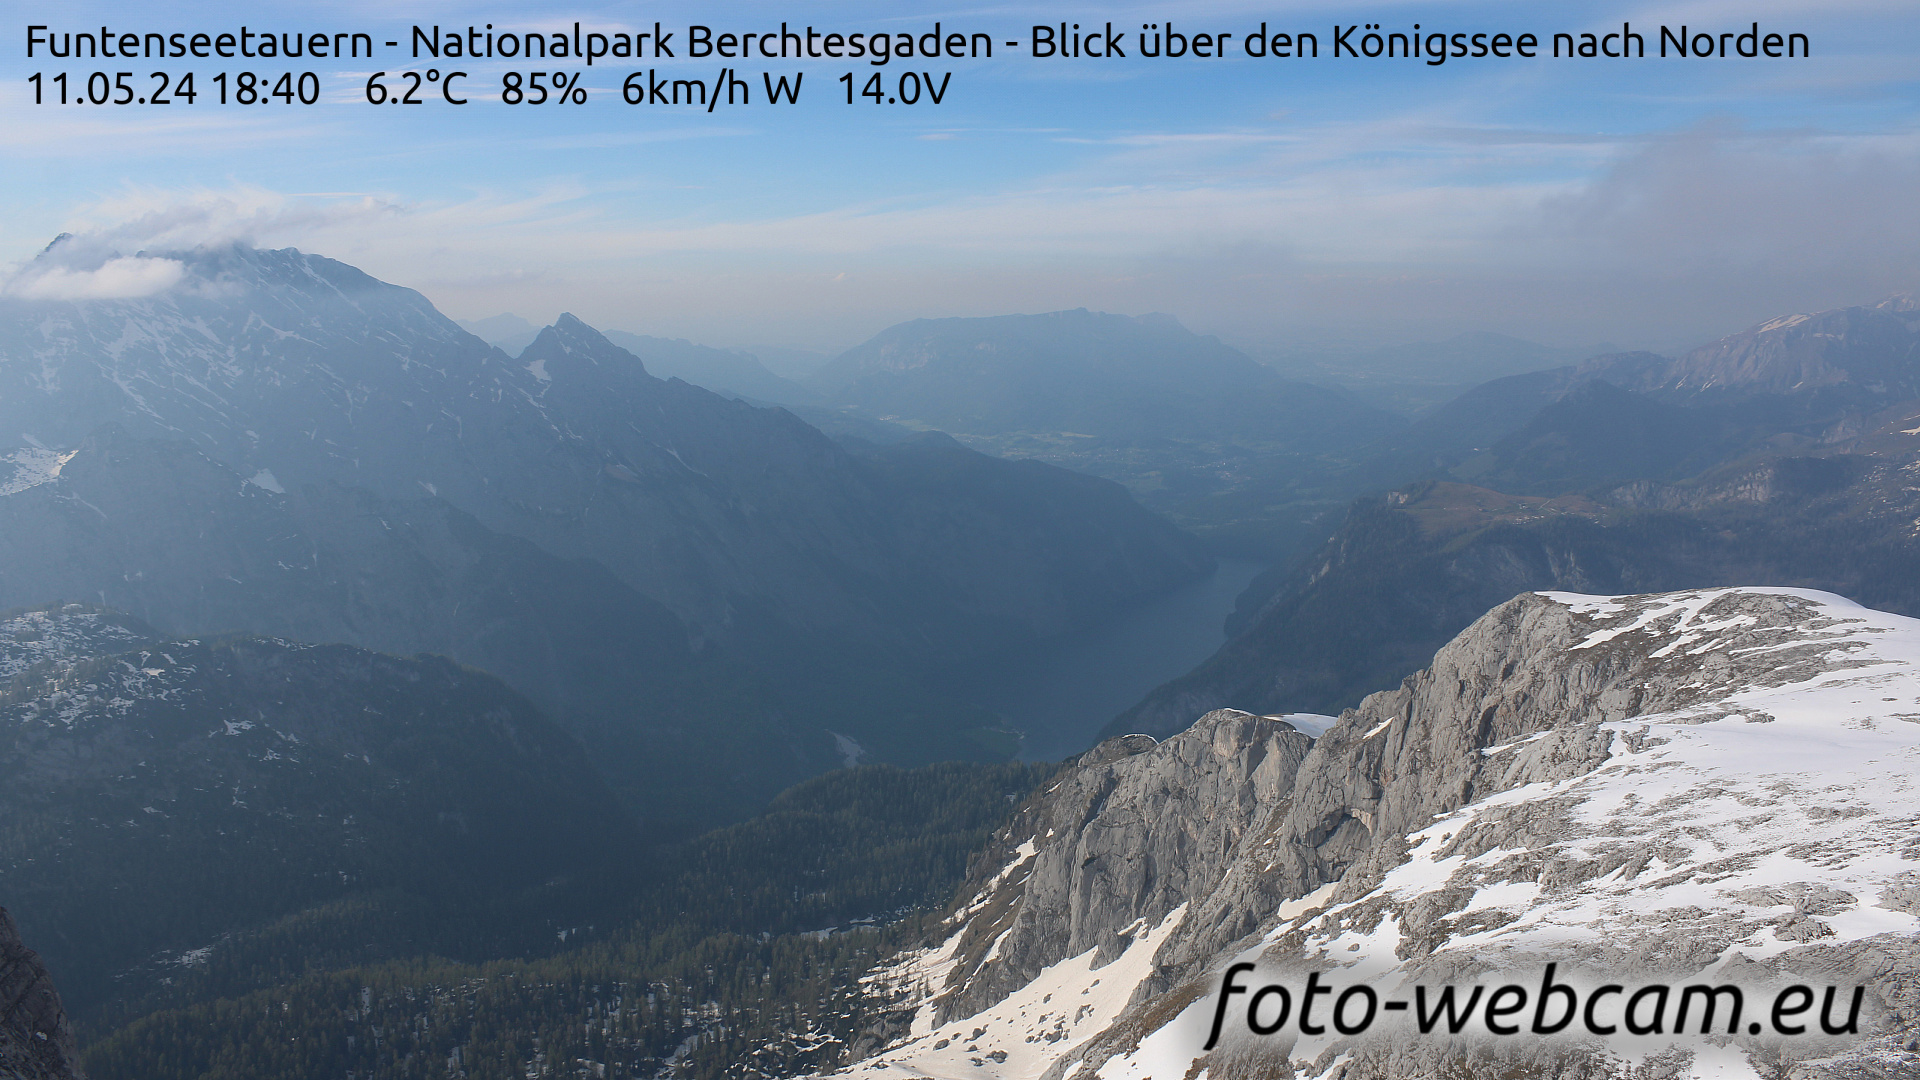 Berchtesgaden Thu. 18:48